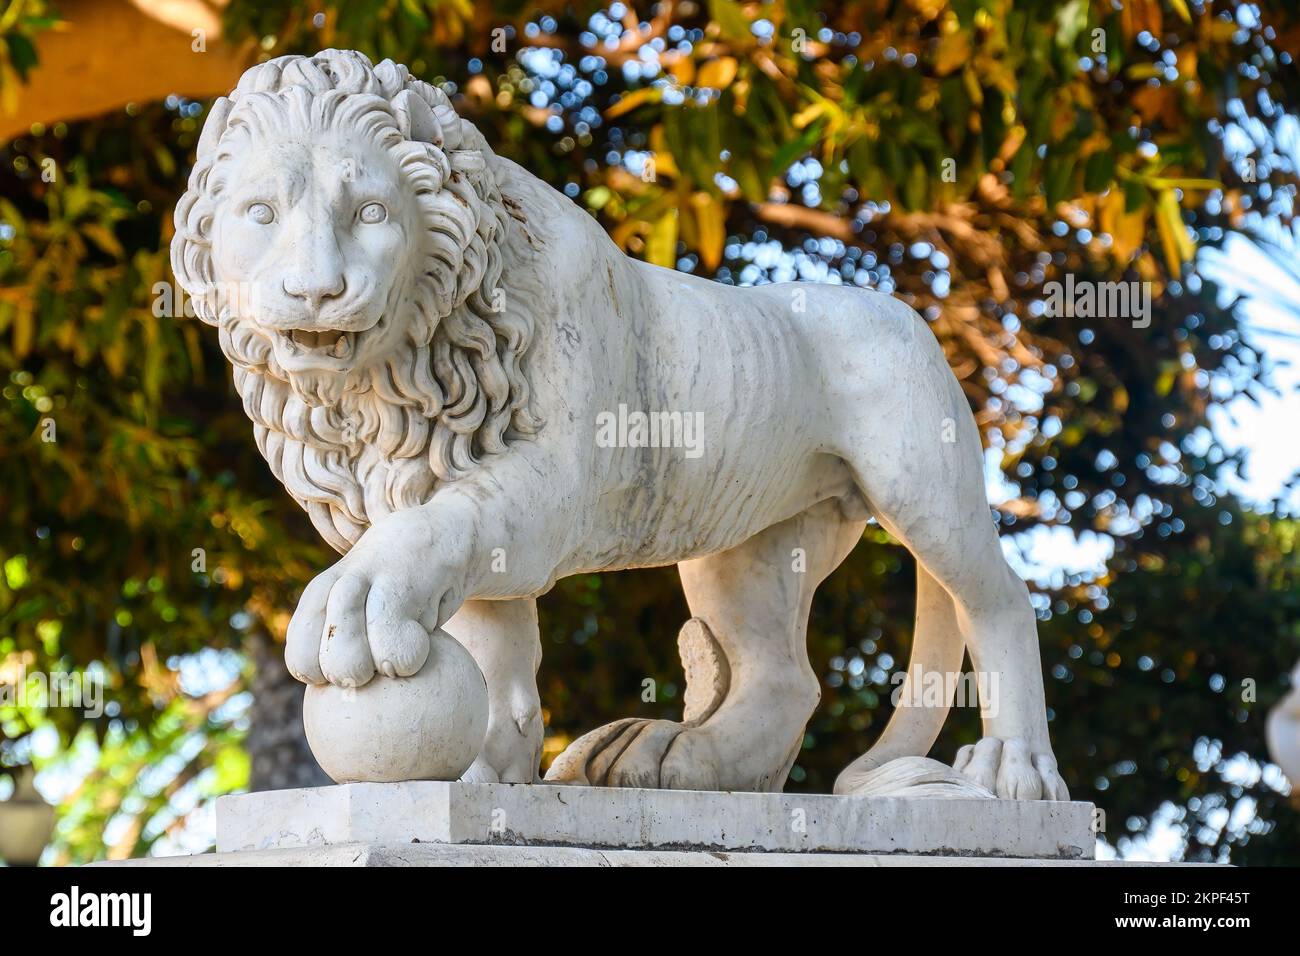 Alicante, España - 12 de septiembre de 2022: Escultura en piedra natural de un león exquisitamente tallada en el Parque Canalejas. Foto de stock